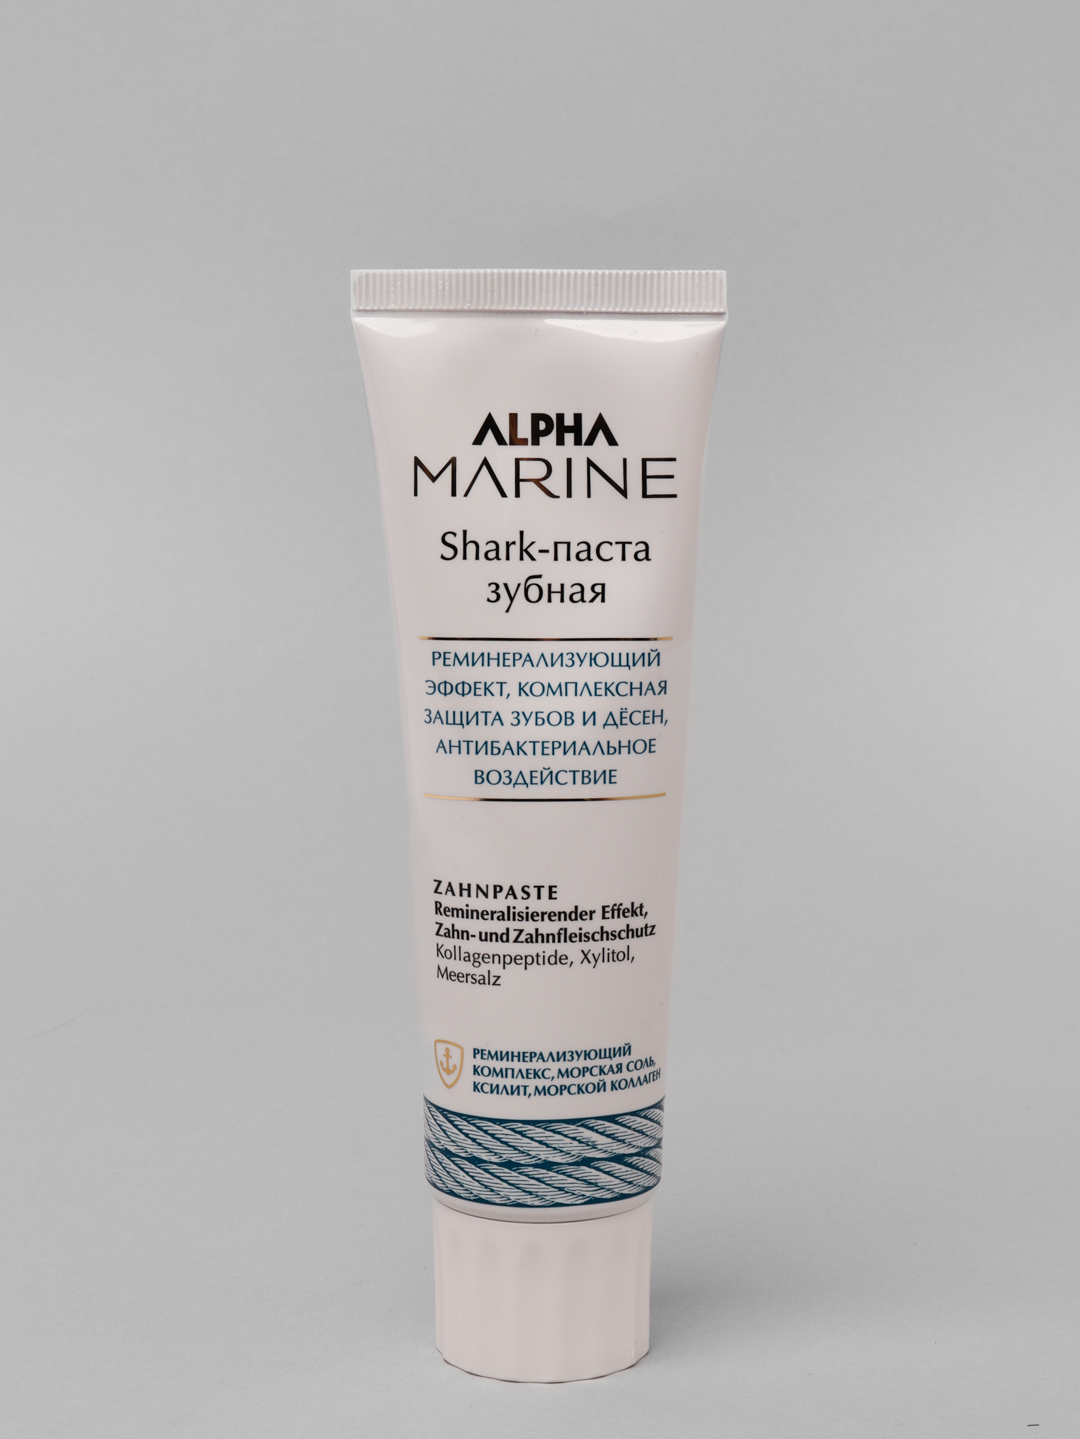 Alpha паста для волос. Зубная паста Шарк. Salt паста для волос Alpha Marine. Зубная паста Shark детская.